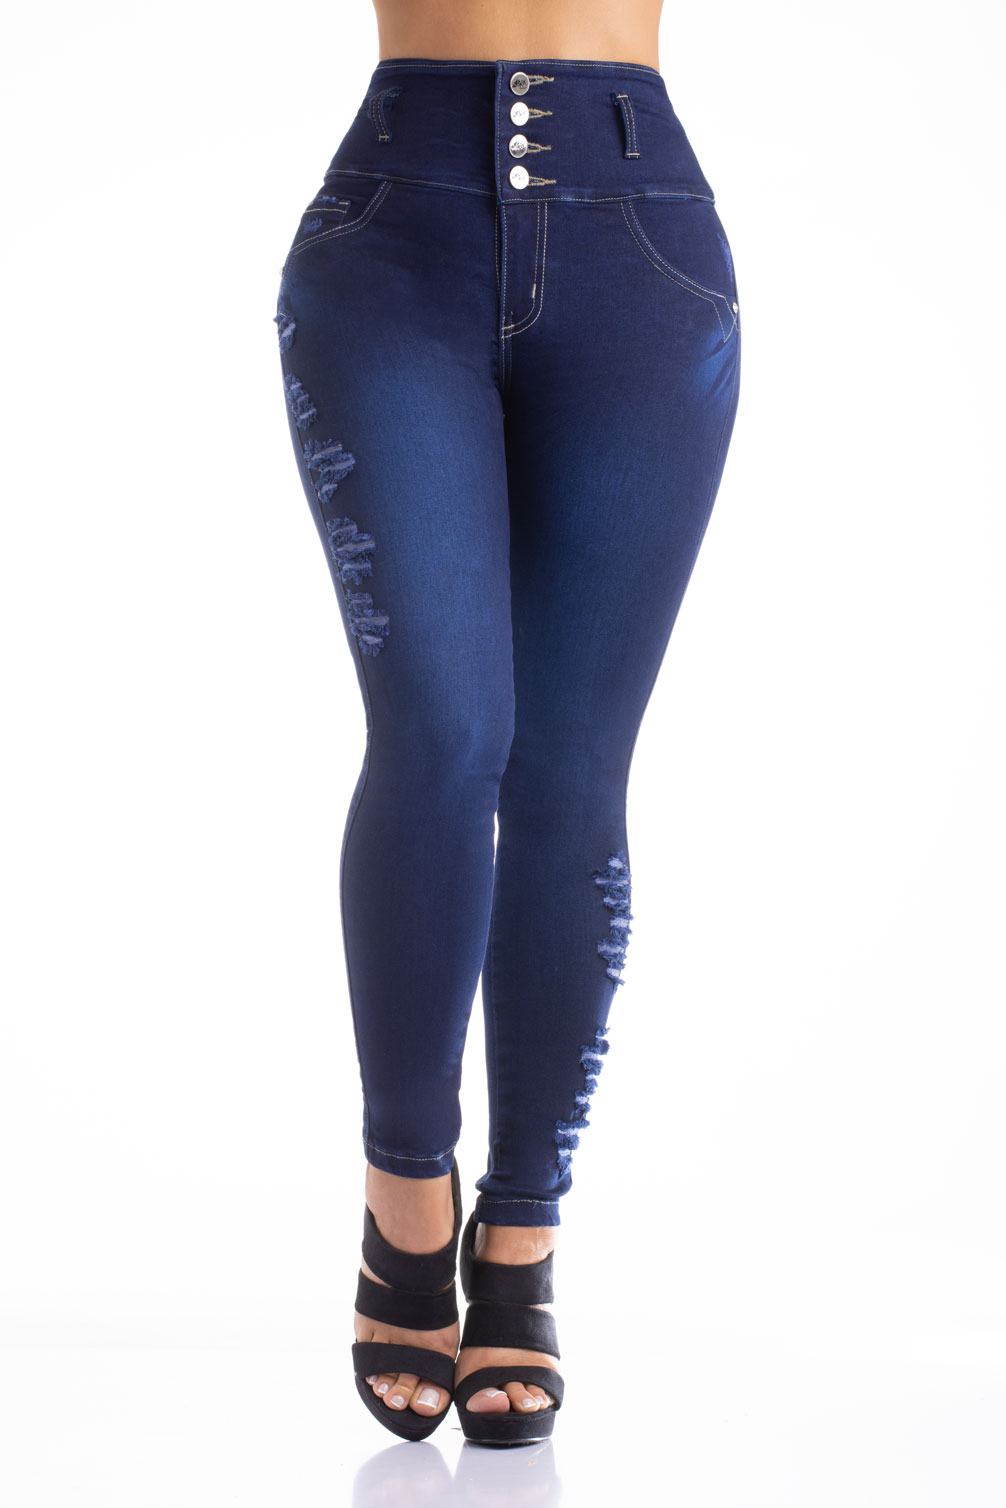 Jeans Colombiano Verox 6301 – Colombian Jeans & Fajas